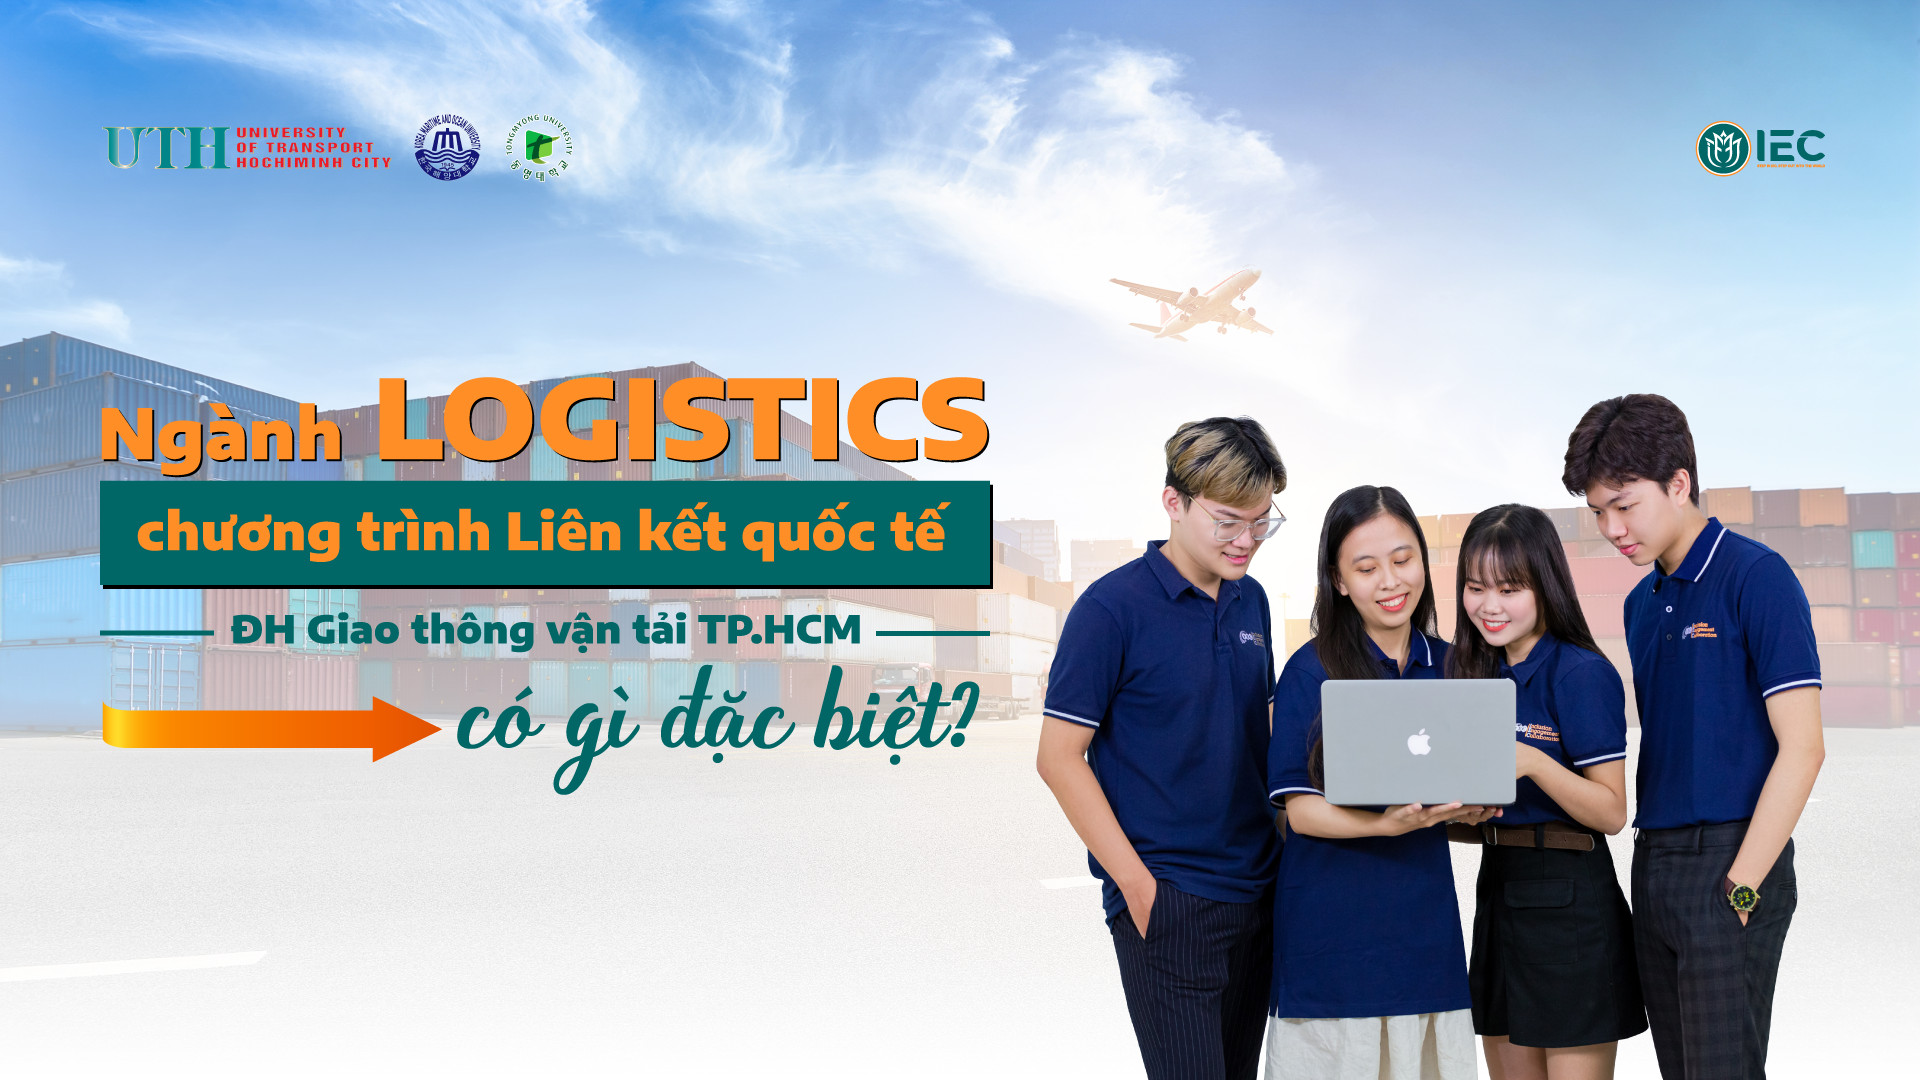 Ngành Logistics chương trình Liên kết quốc tế của ĐH Giao thông vận tải TP.HCM có gì đặc biệt?